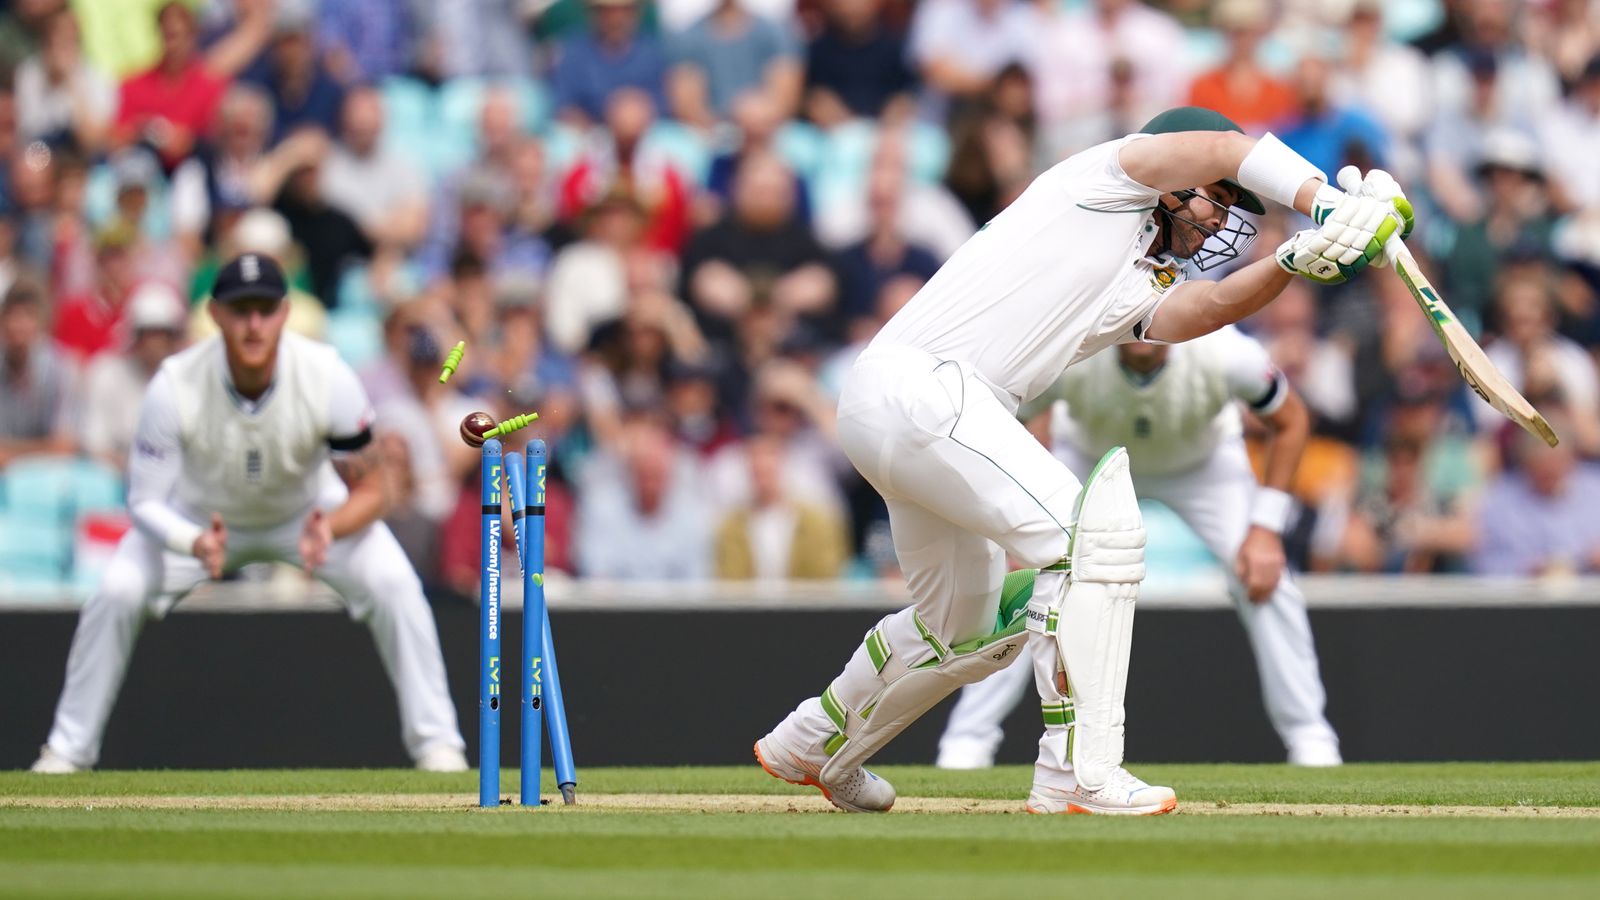 Inglaterra supera a Sudáfrica cuando caen 17 terrenos en el tercer día de la tercera prueba en el Kia Oval |  Noticias de críquet